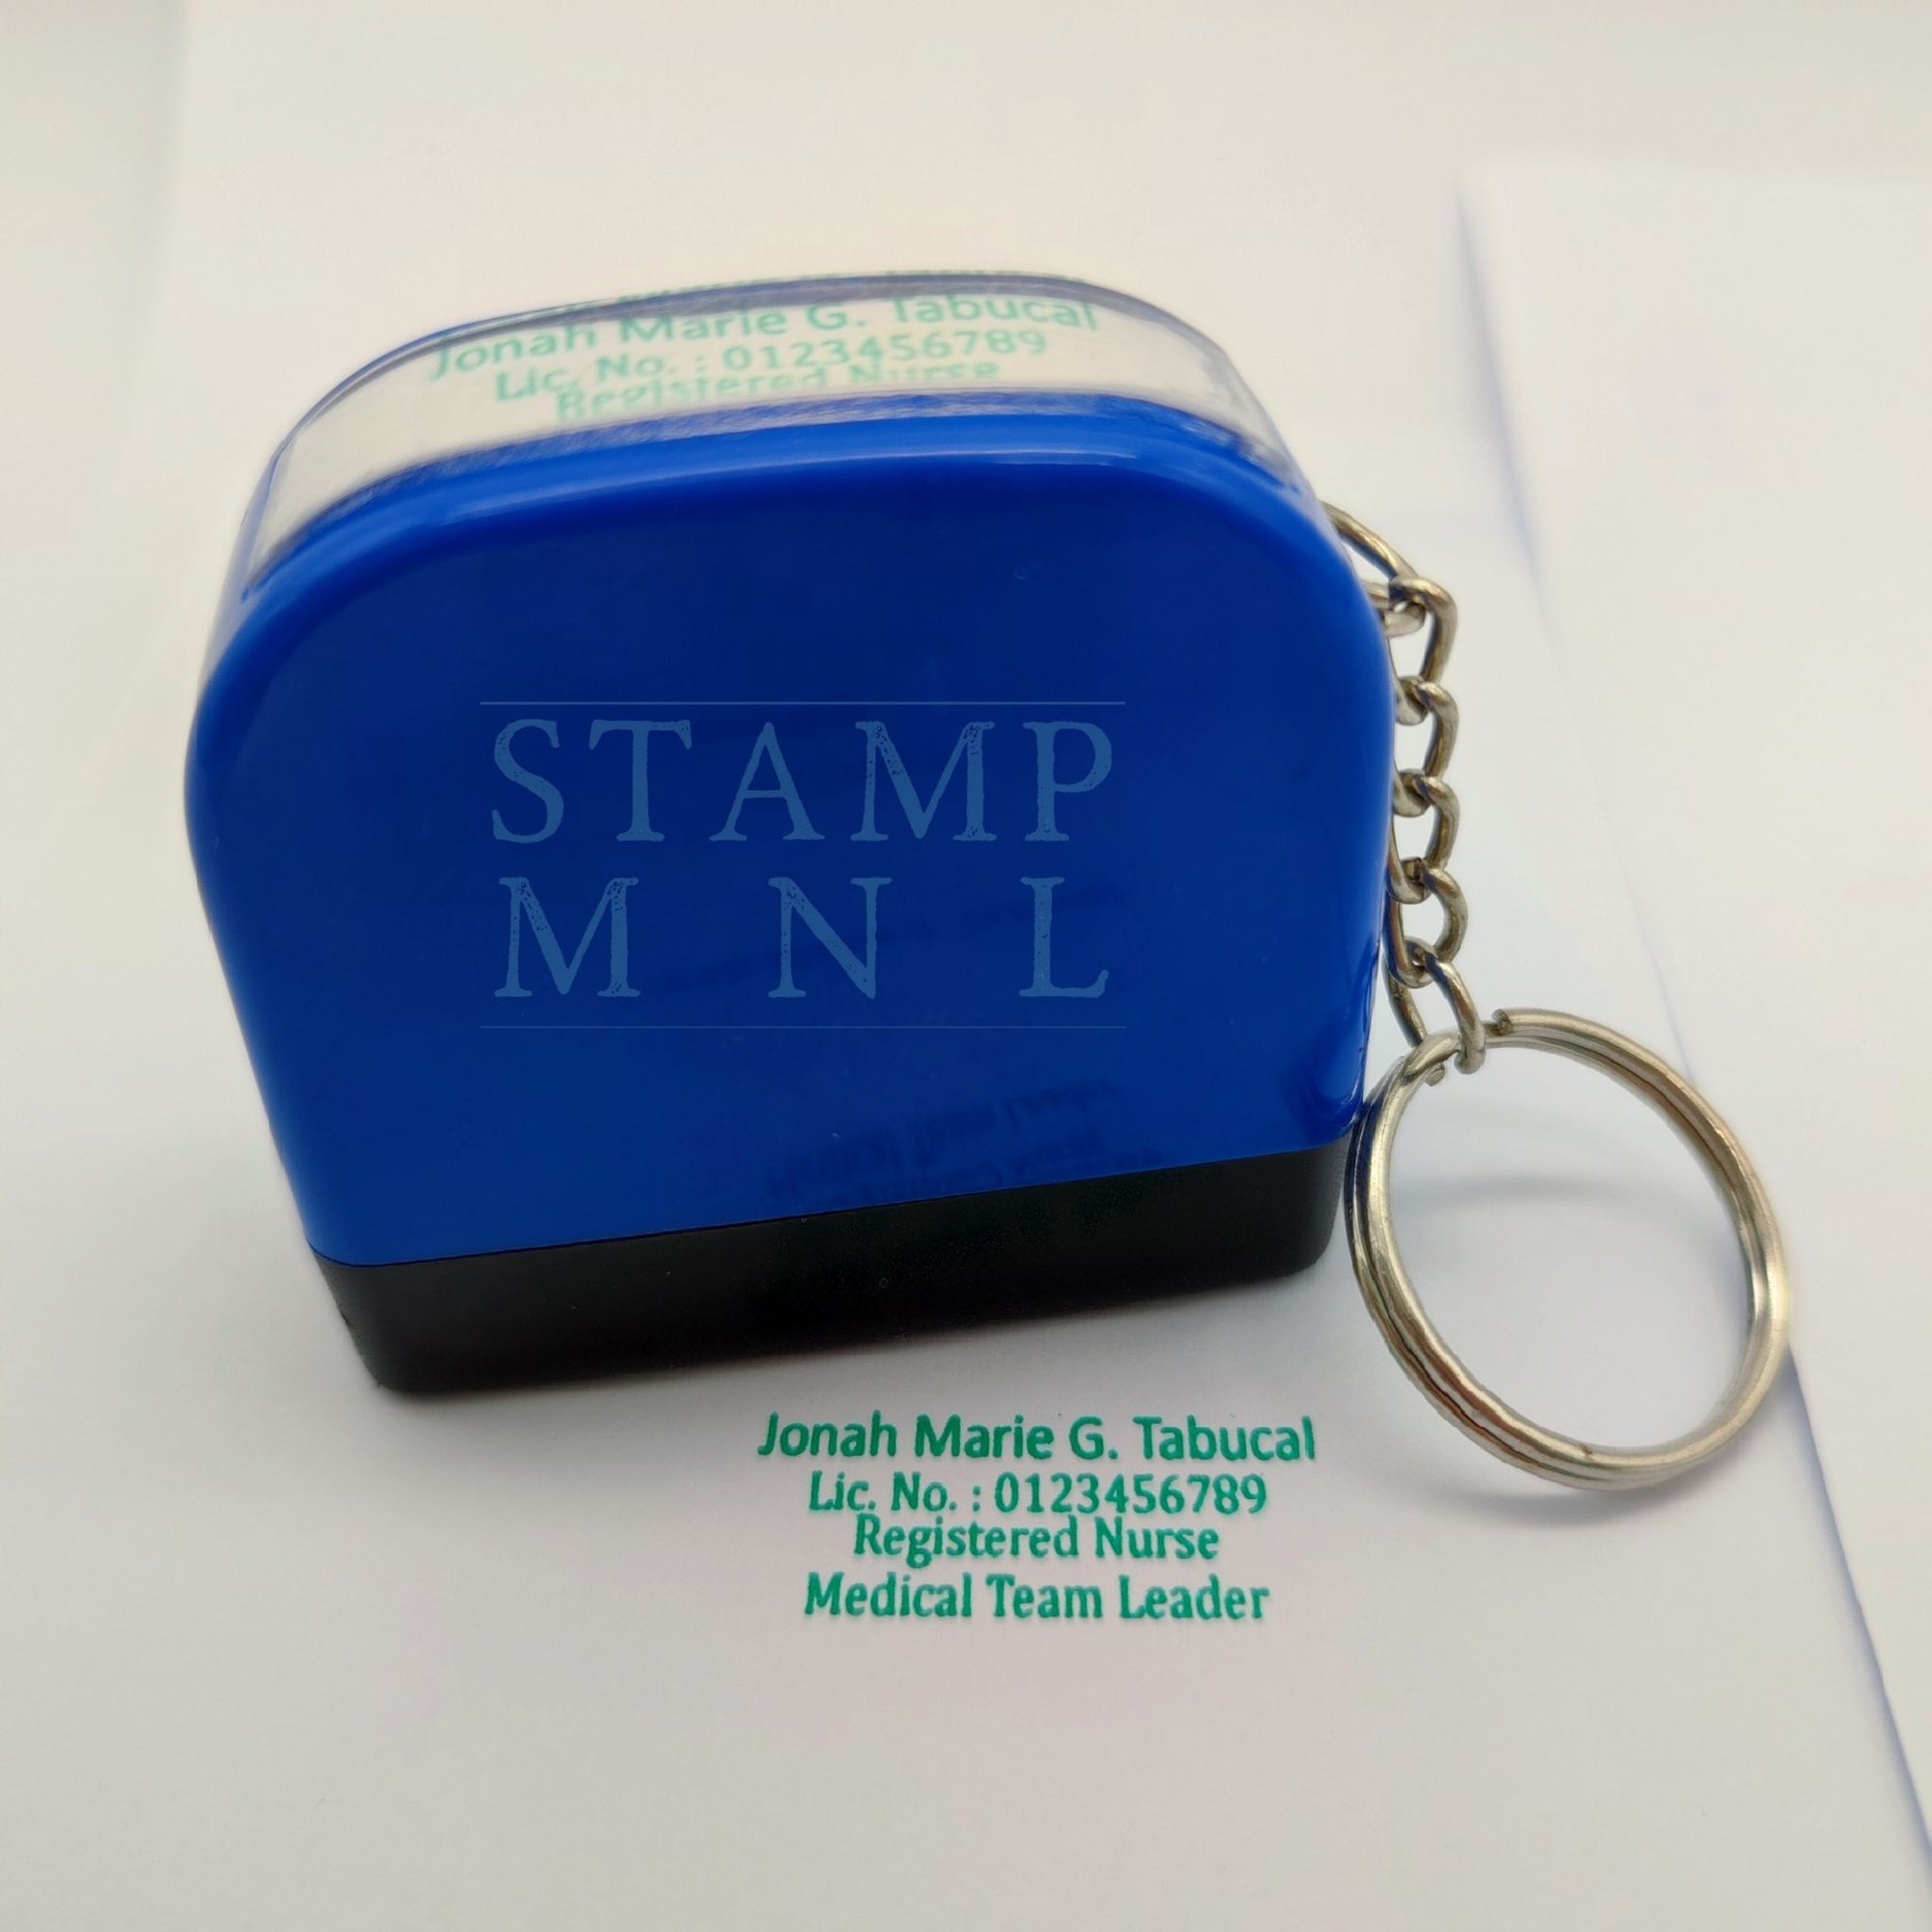 Casio Label Writer Stamp Maker Pommelier Stamp Kit 30 × 30mm STK-3030 